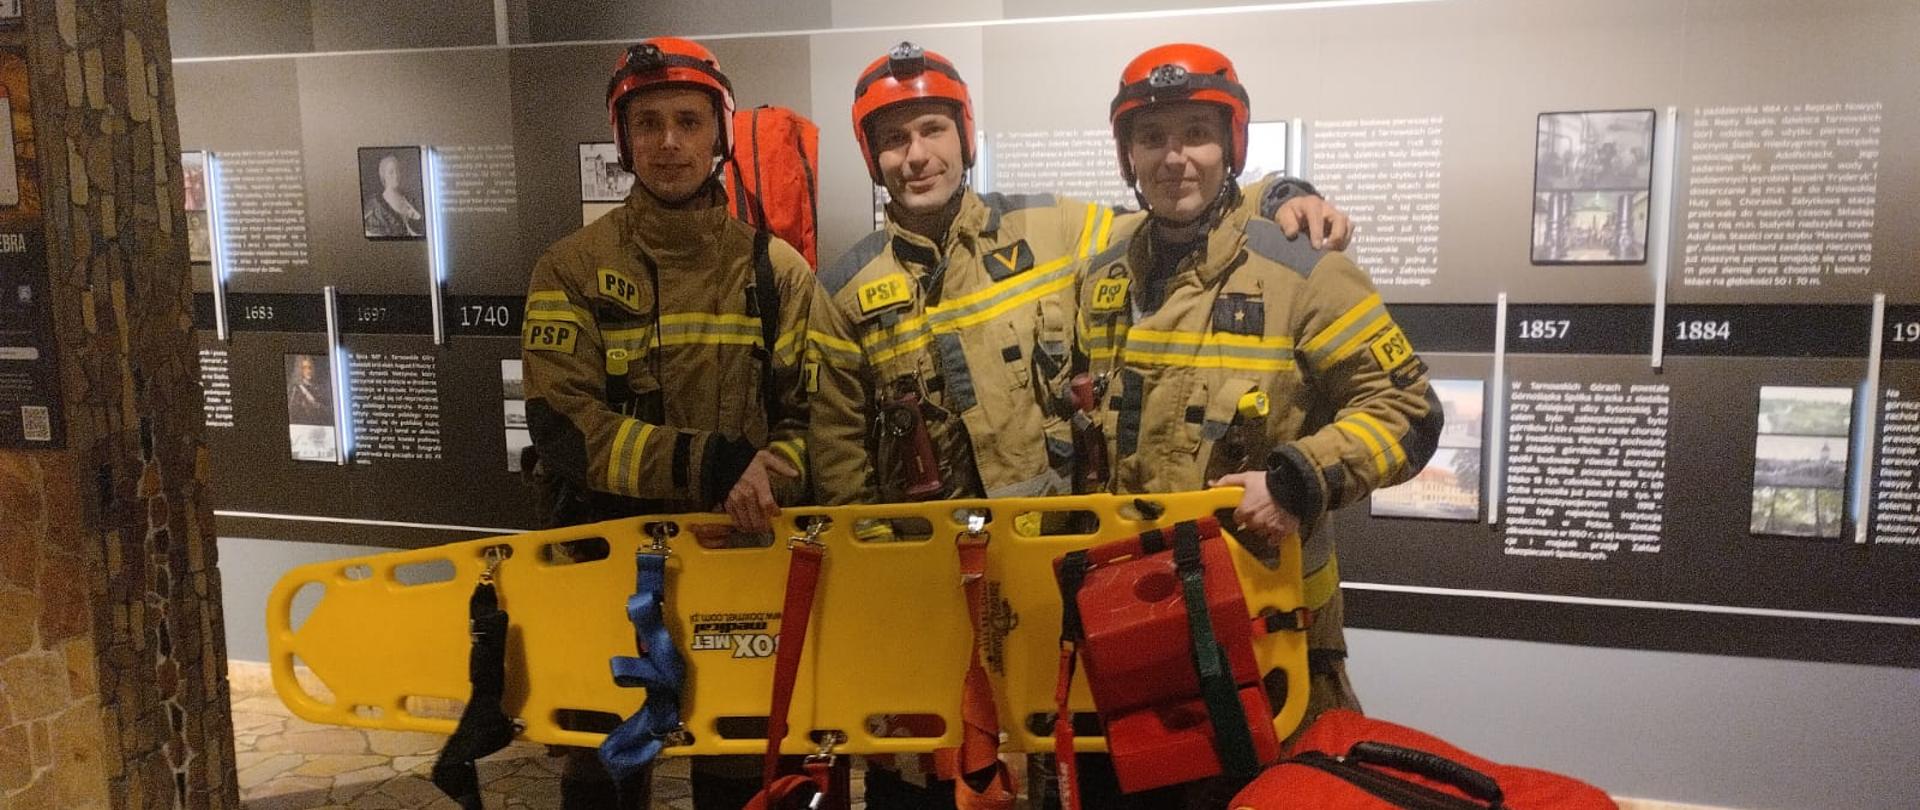 Trzech strażaków stoi w mundurach bojowych. W rękach trzymają żółtą deskę ortopedyczną.